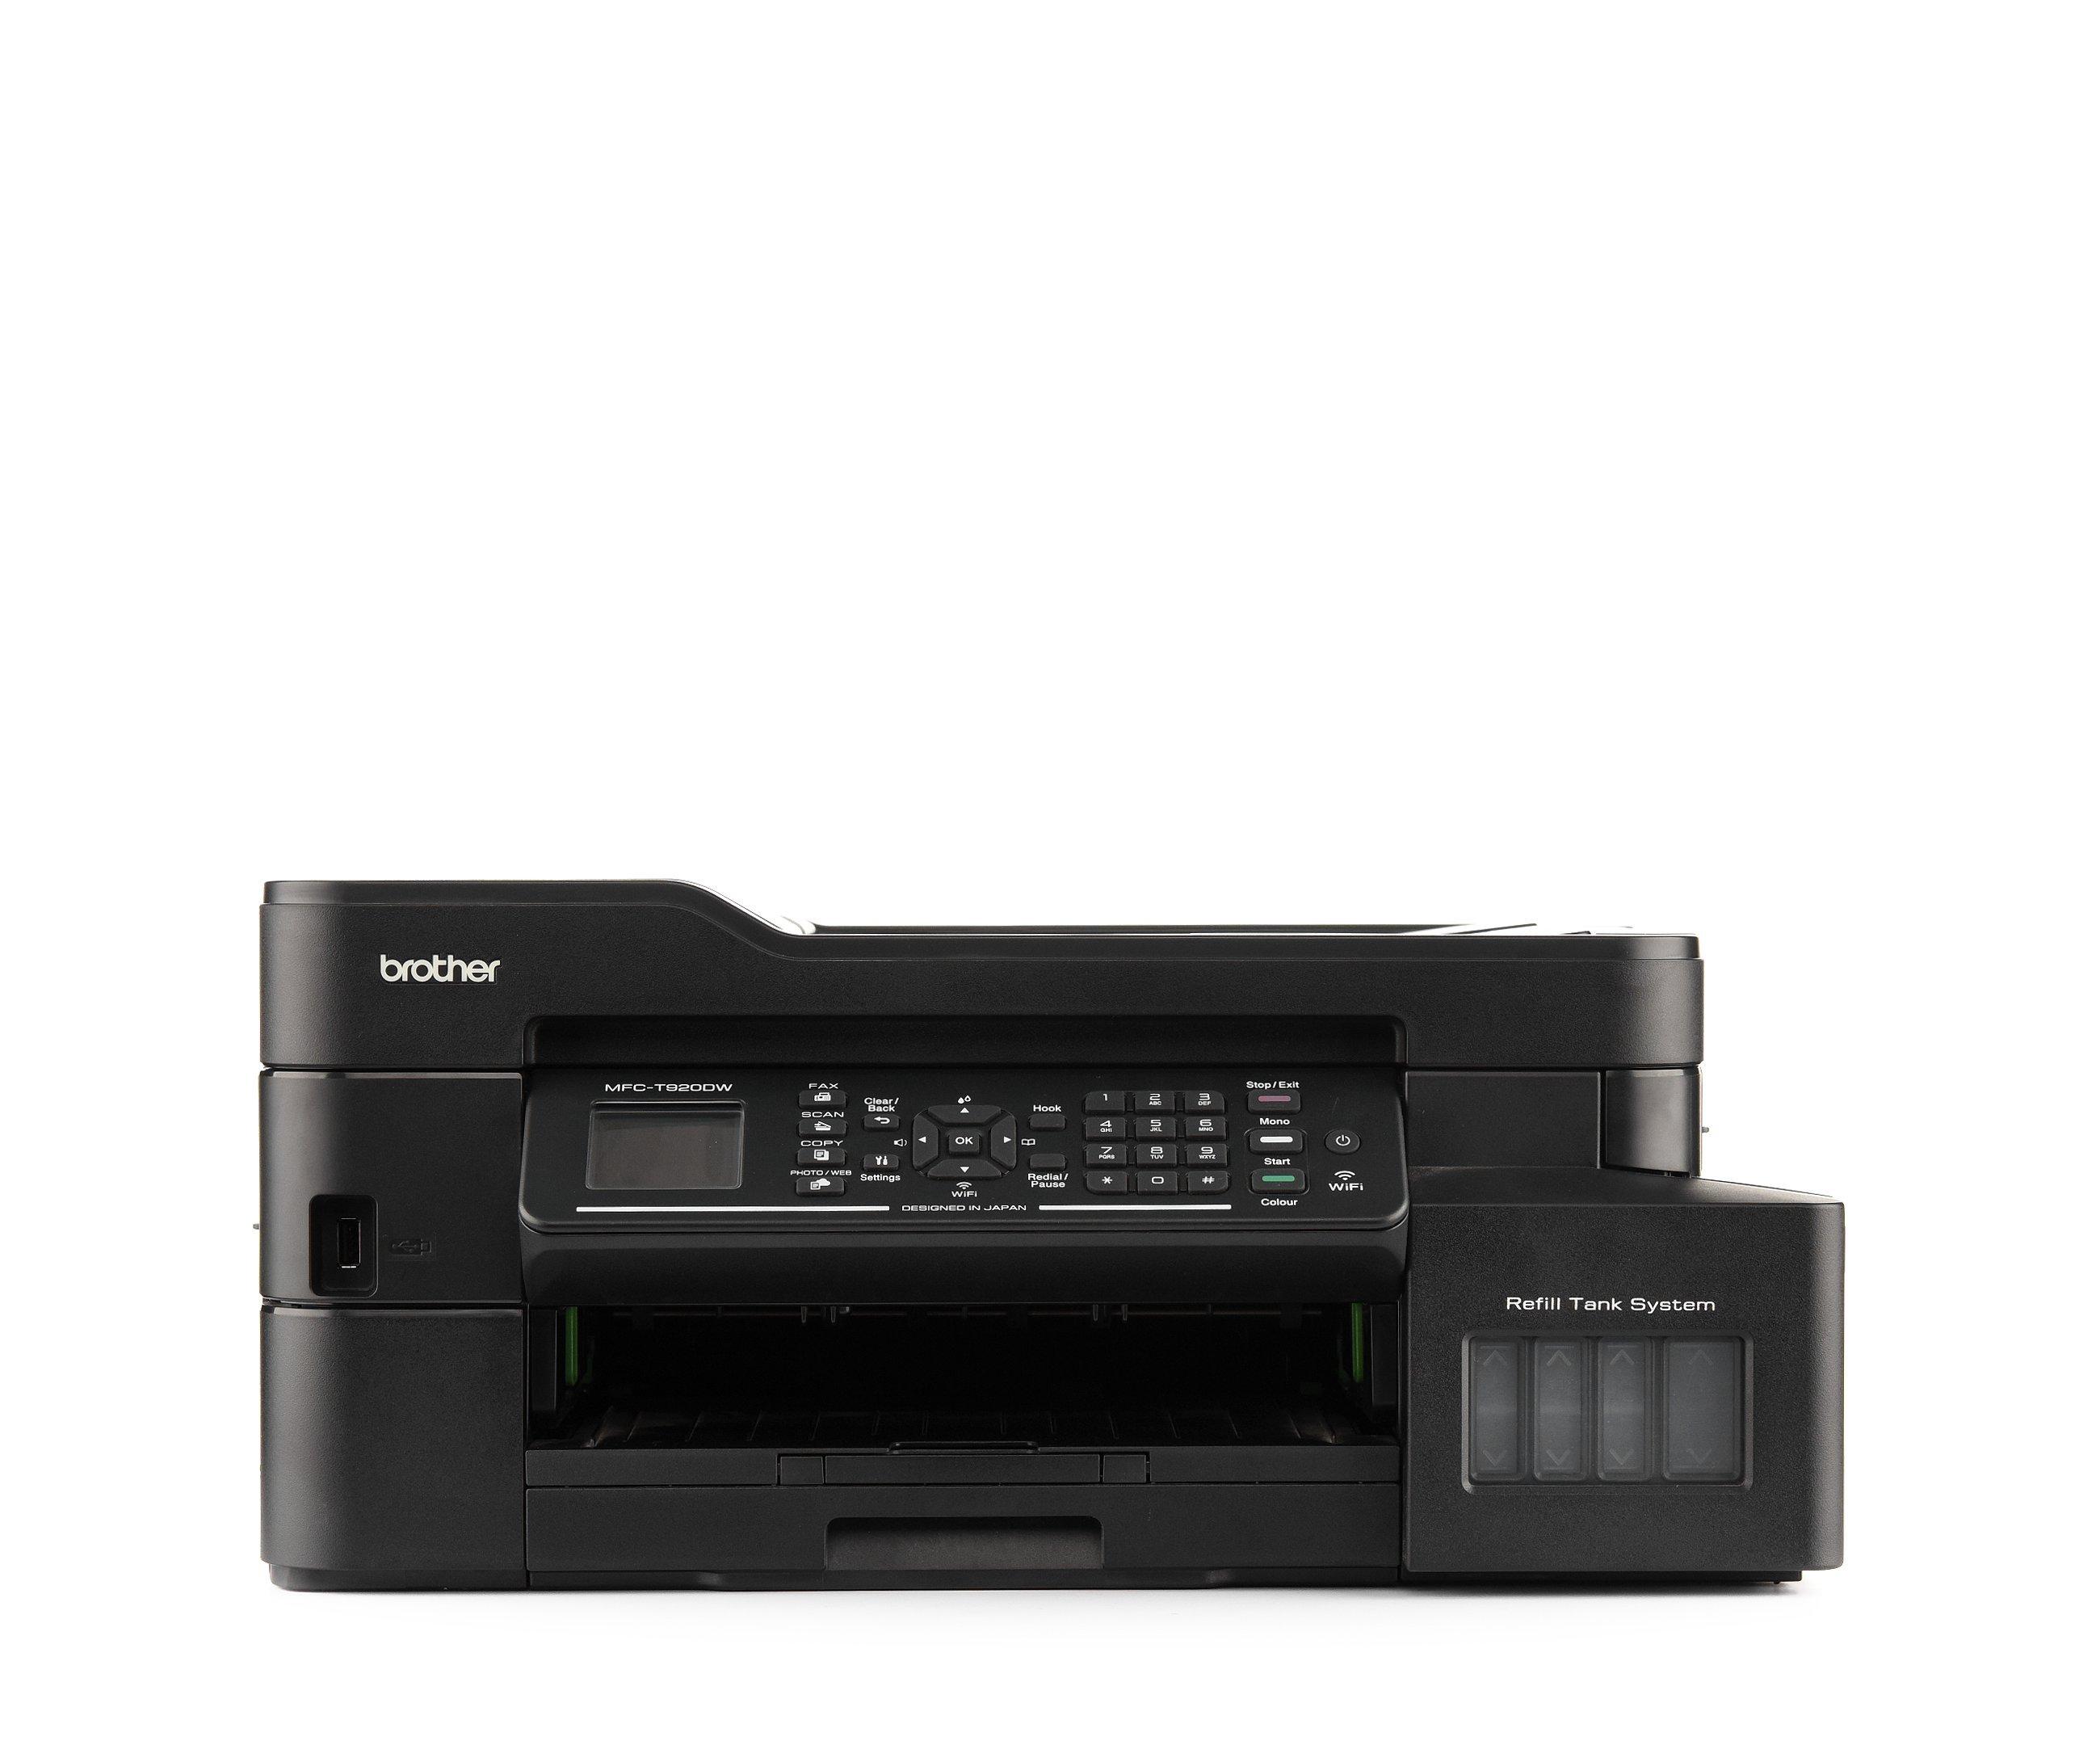 Impresora Brother MFC T920DW Multifuncional Wifi, Duplex, ADF, Fax BROTHER